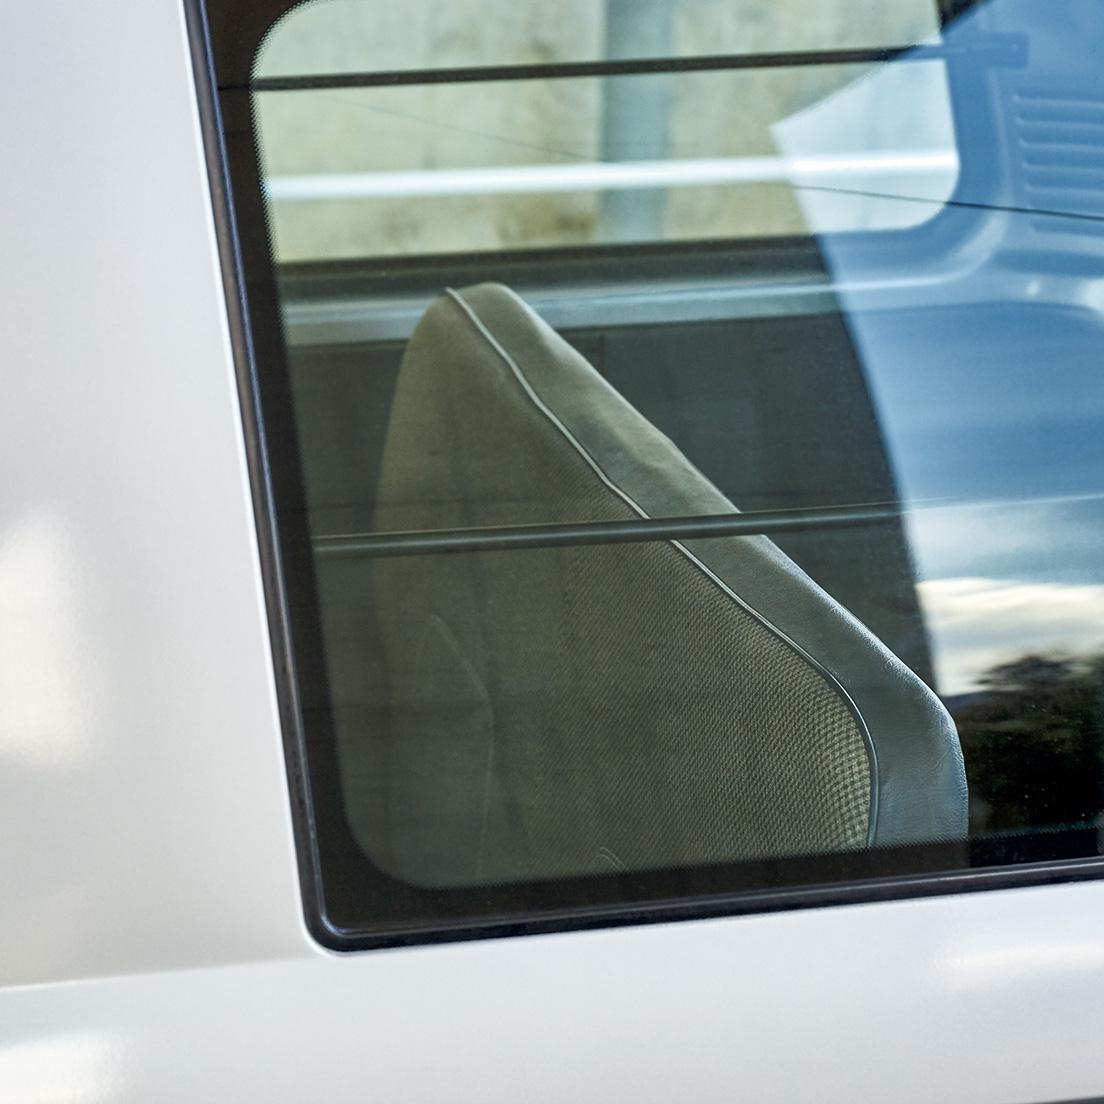 潔いほど装備のない商用タイプもラインナップされており、その場合のリアシートは質素で、窓側に荷物を固定するためのポールが付いている。